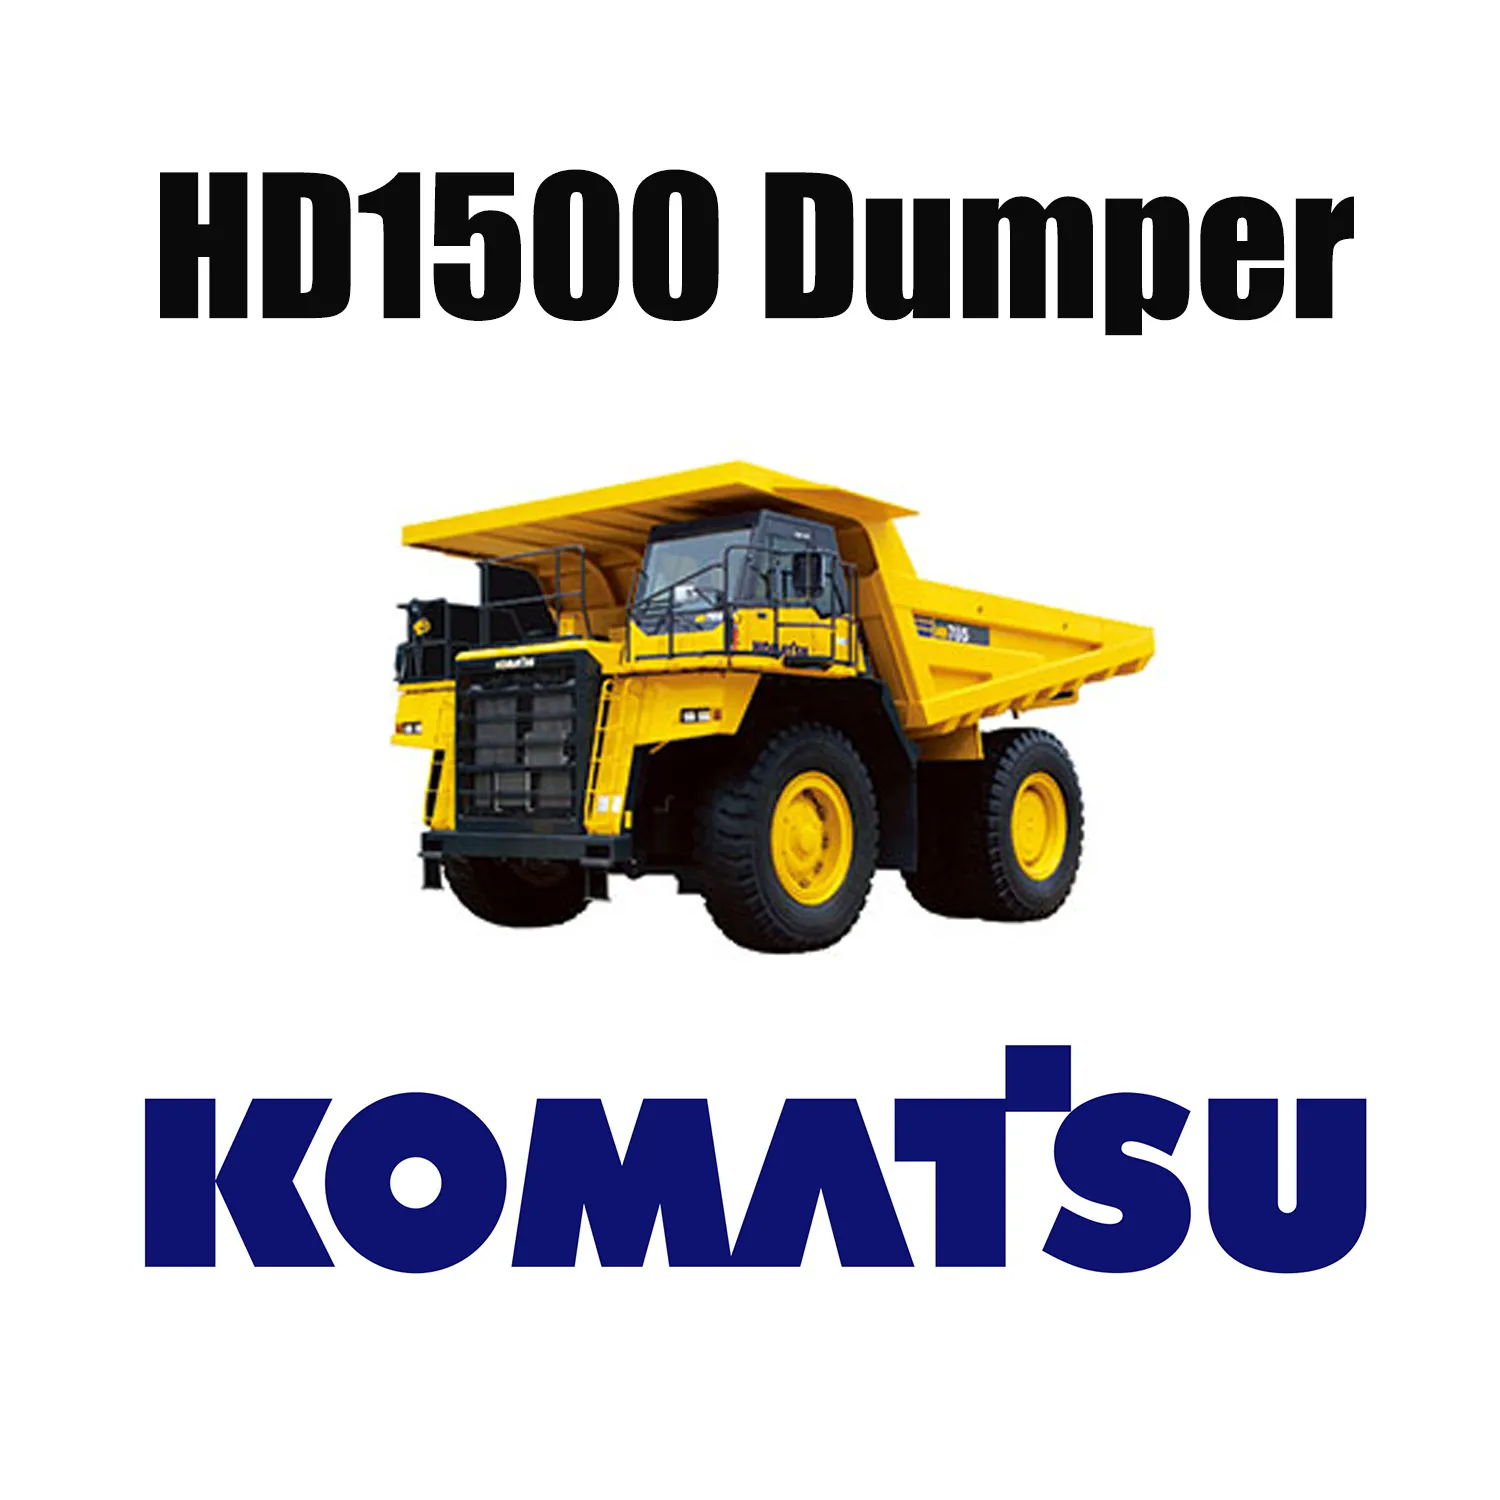 Camión mecánico KOMATSU HD1500 con neumáticos especiales para movimiento de tierras 33.00R51